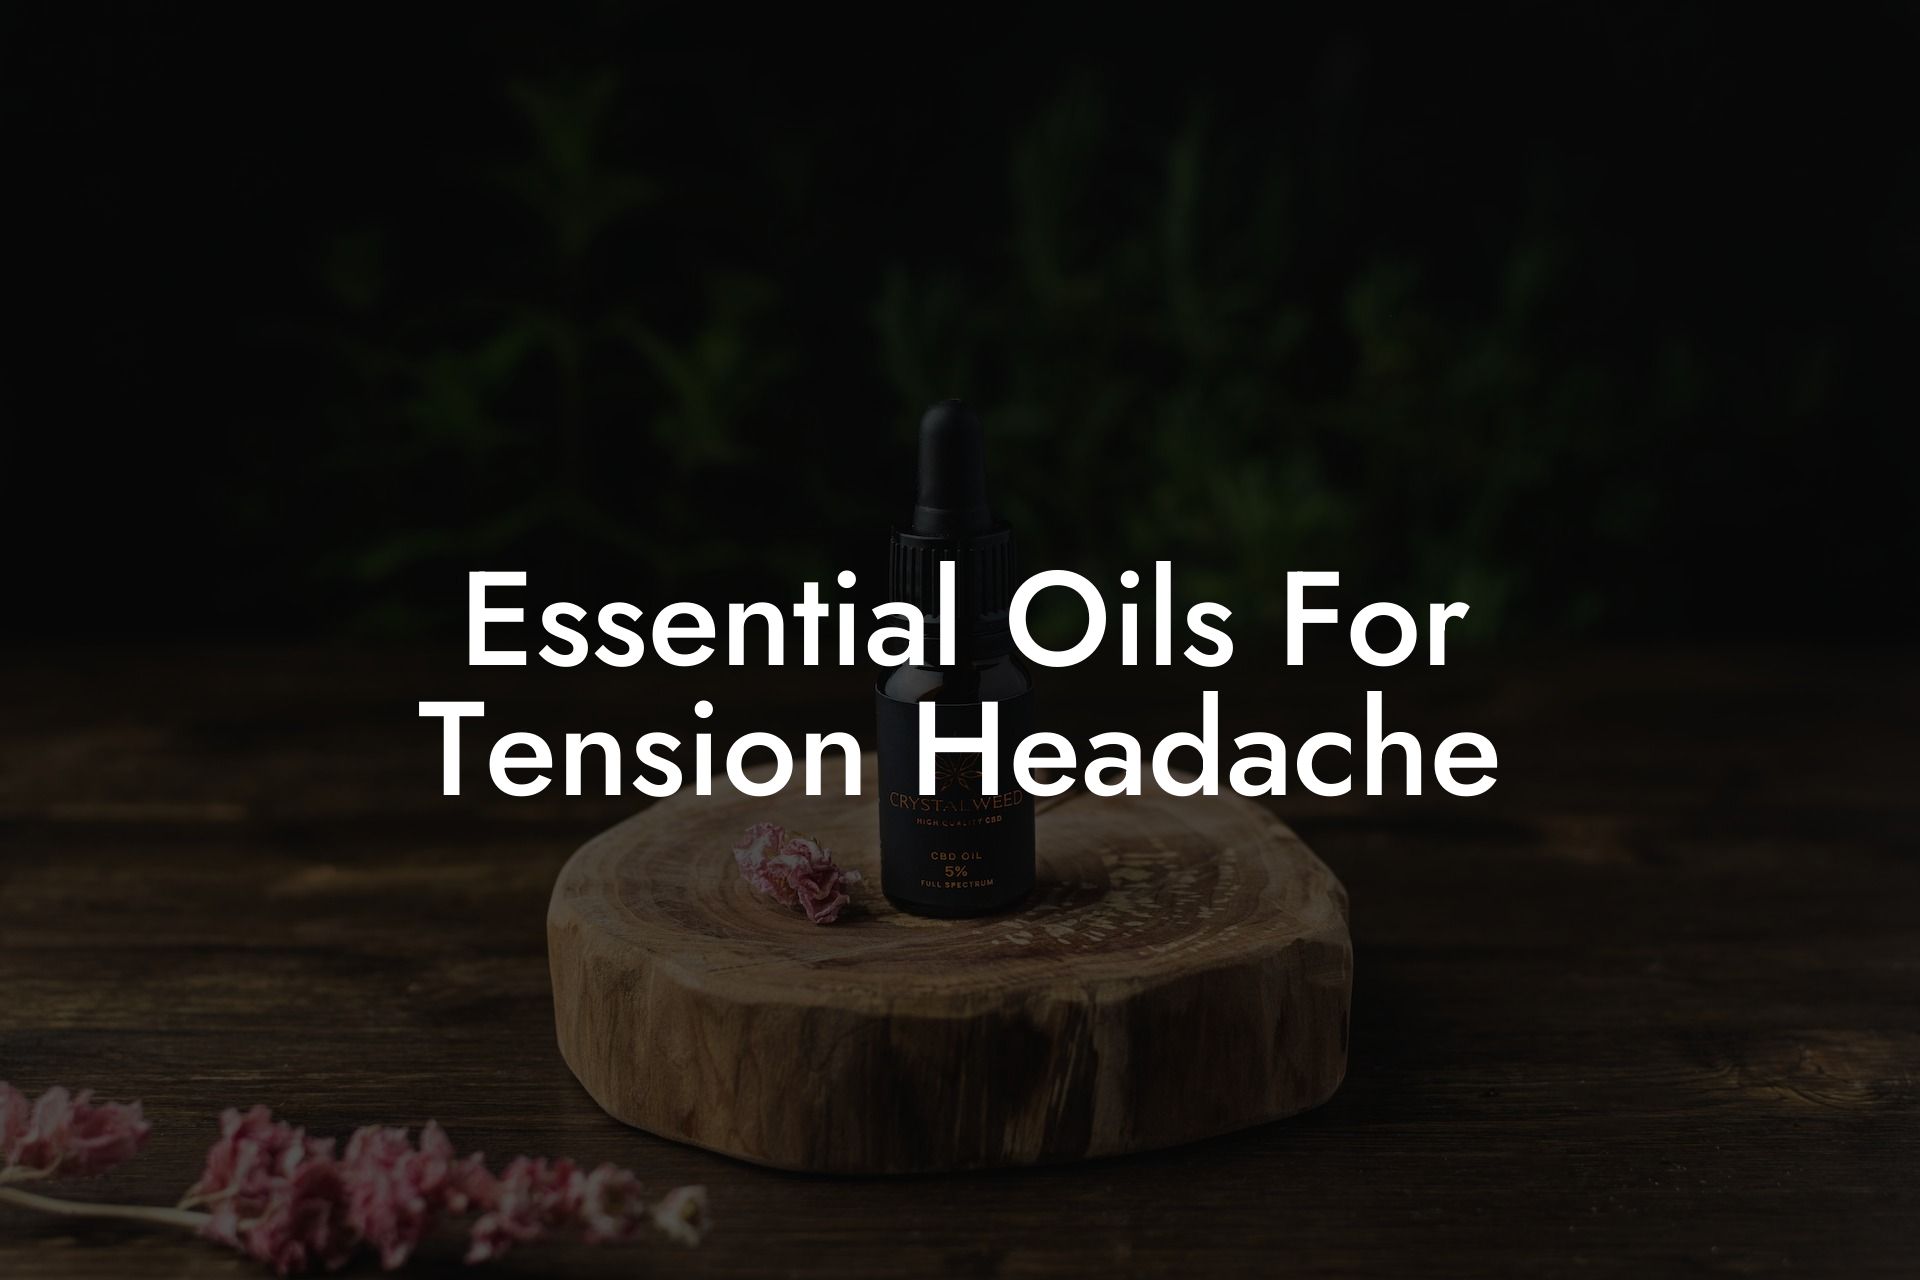 Essential Oils For Tension Headache